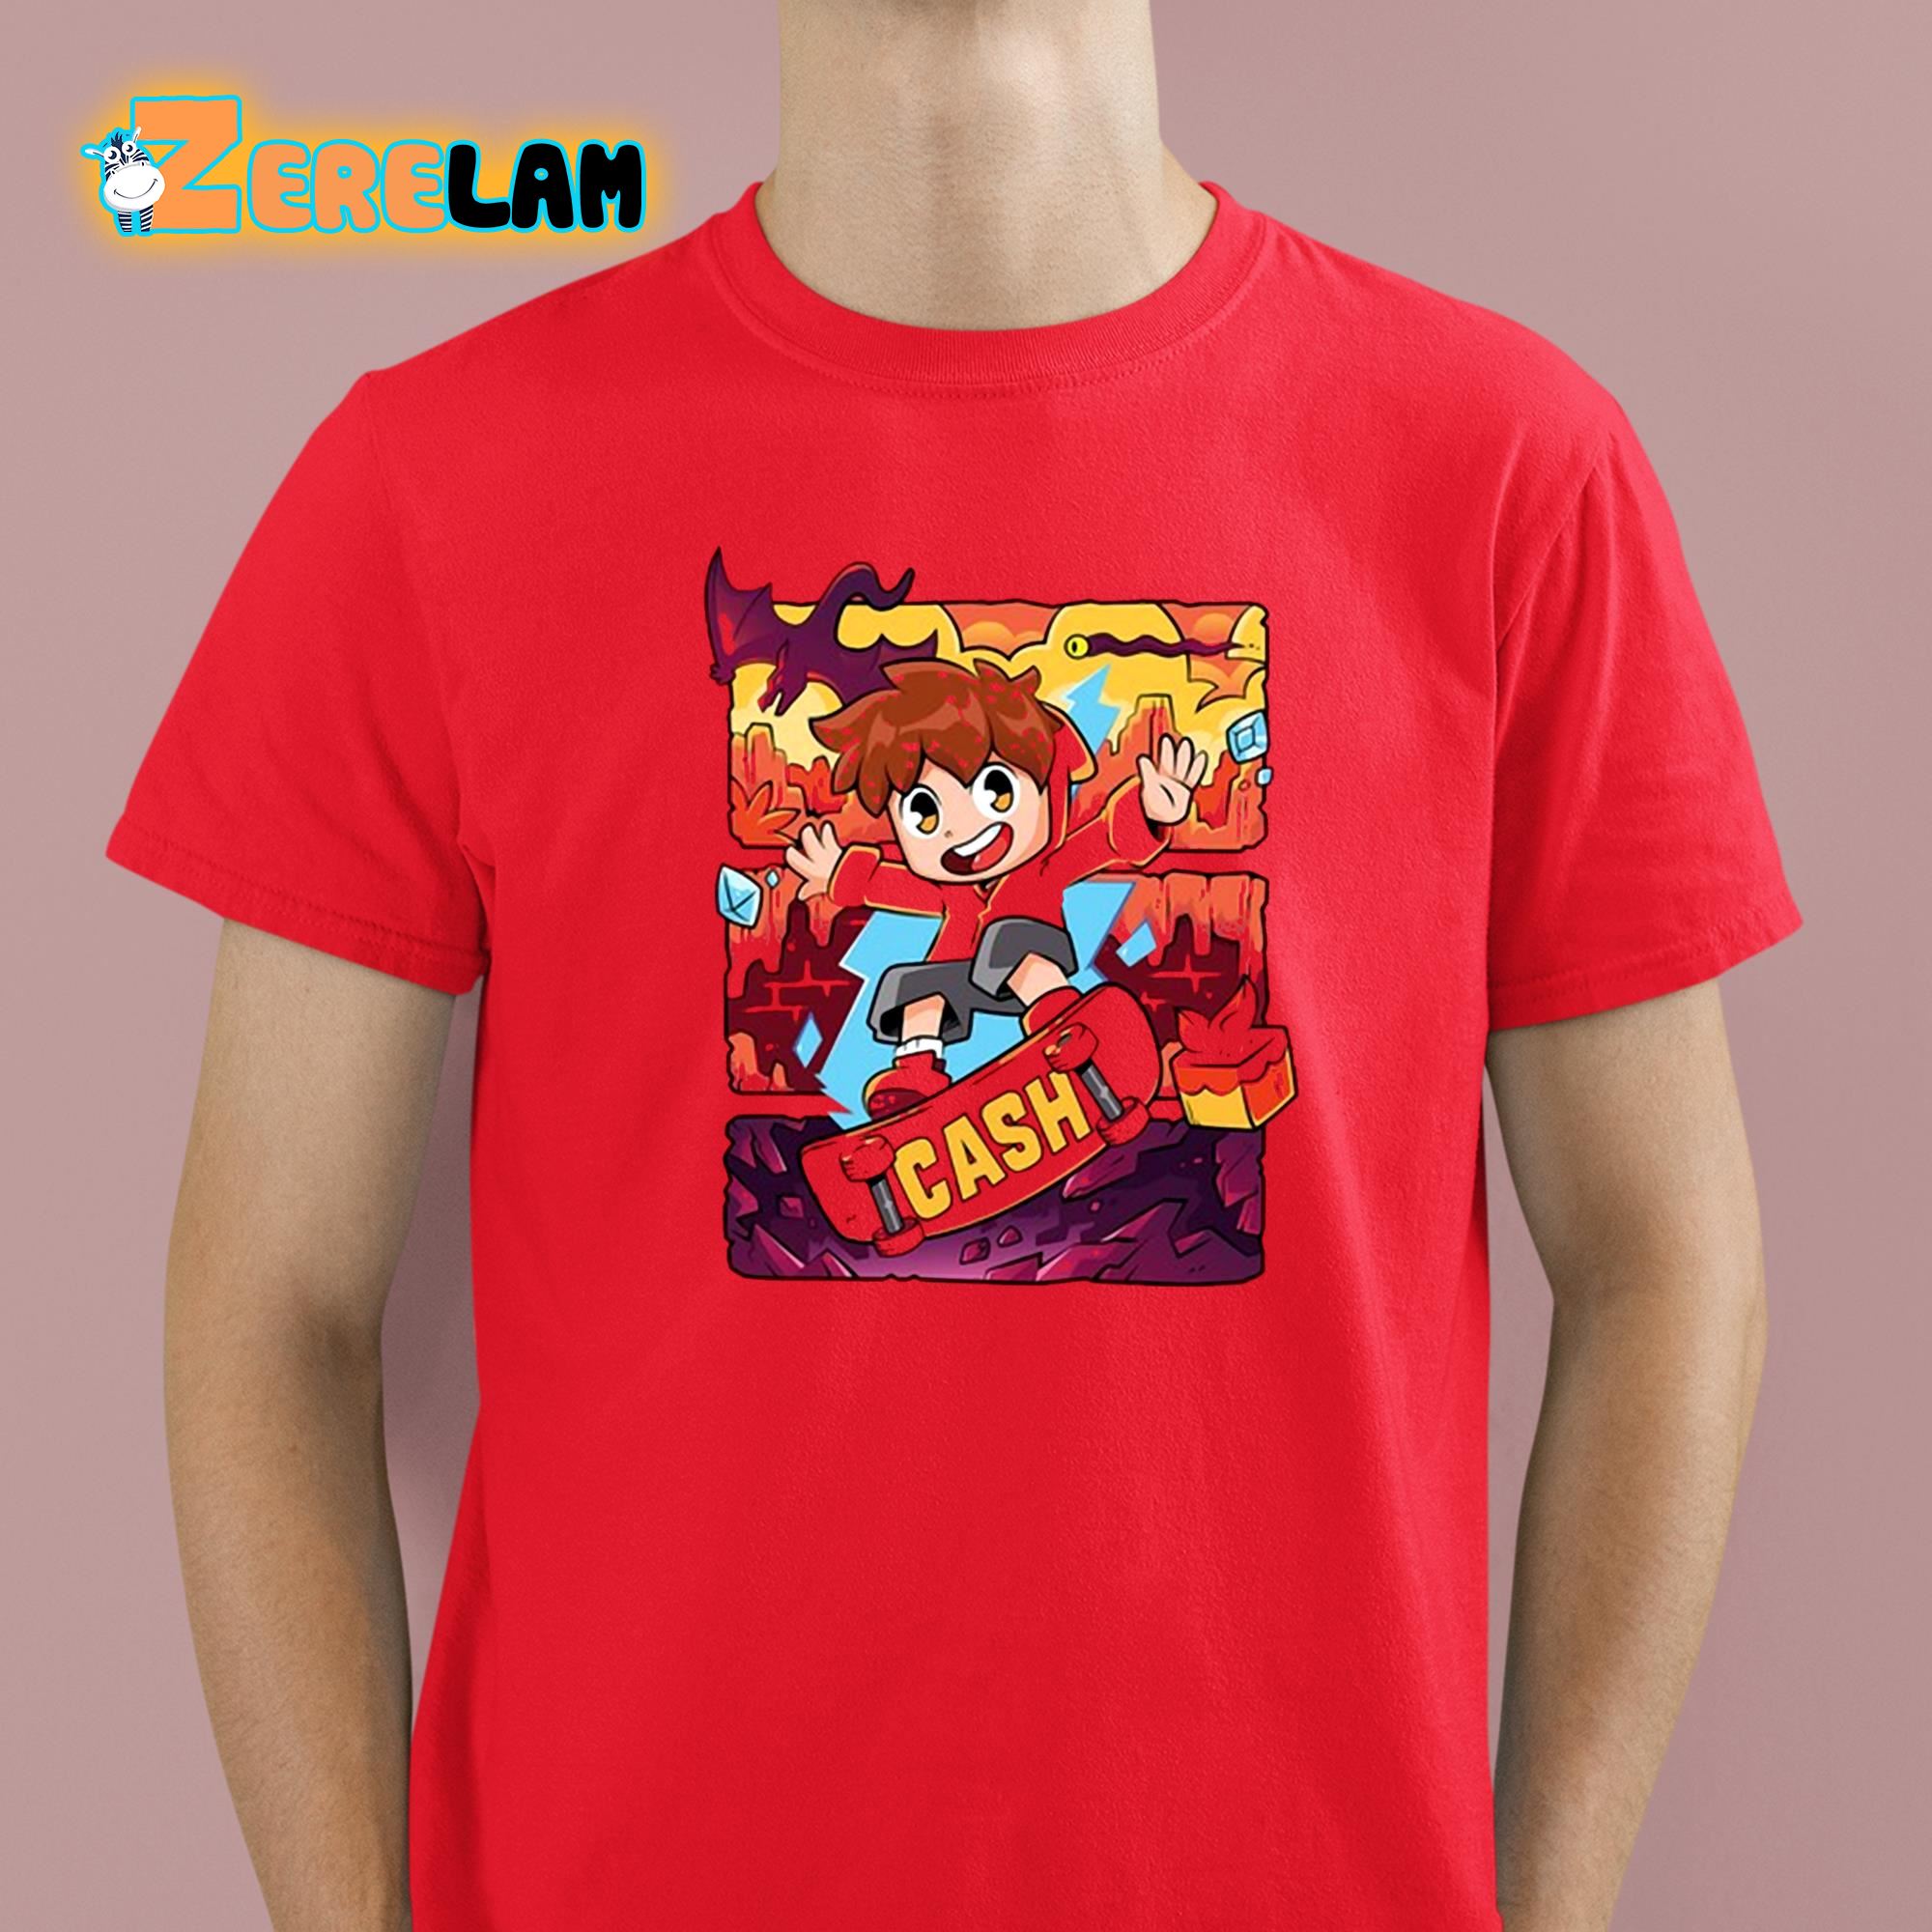 Cash Red Hot Shirt 2 1